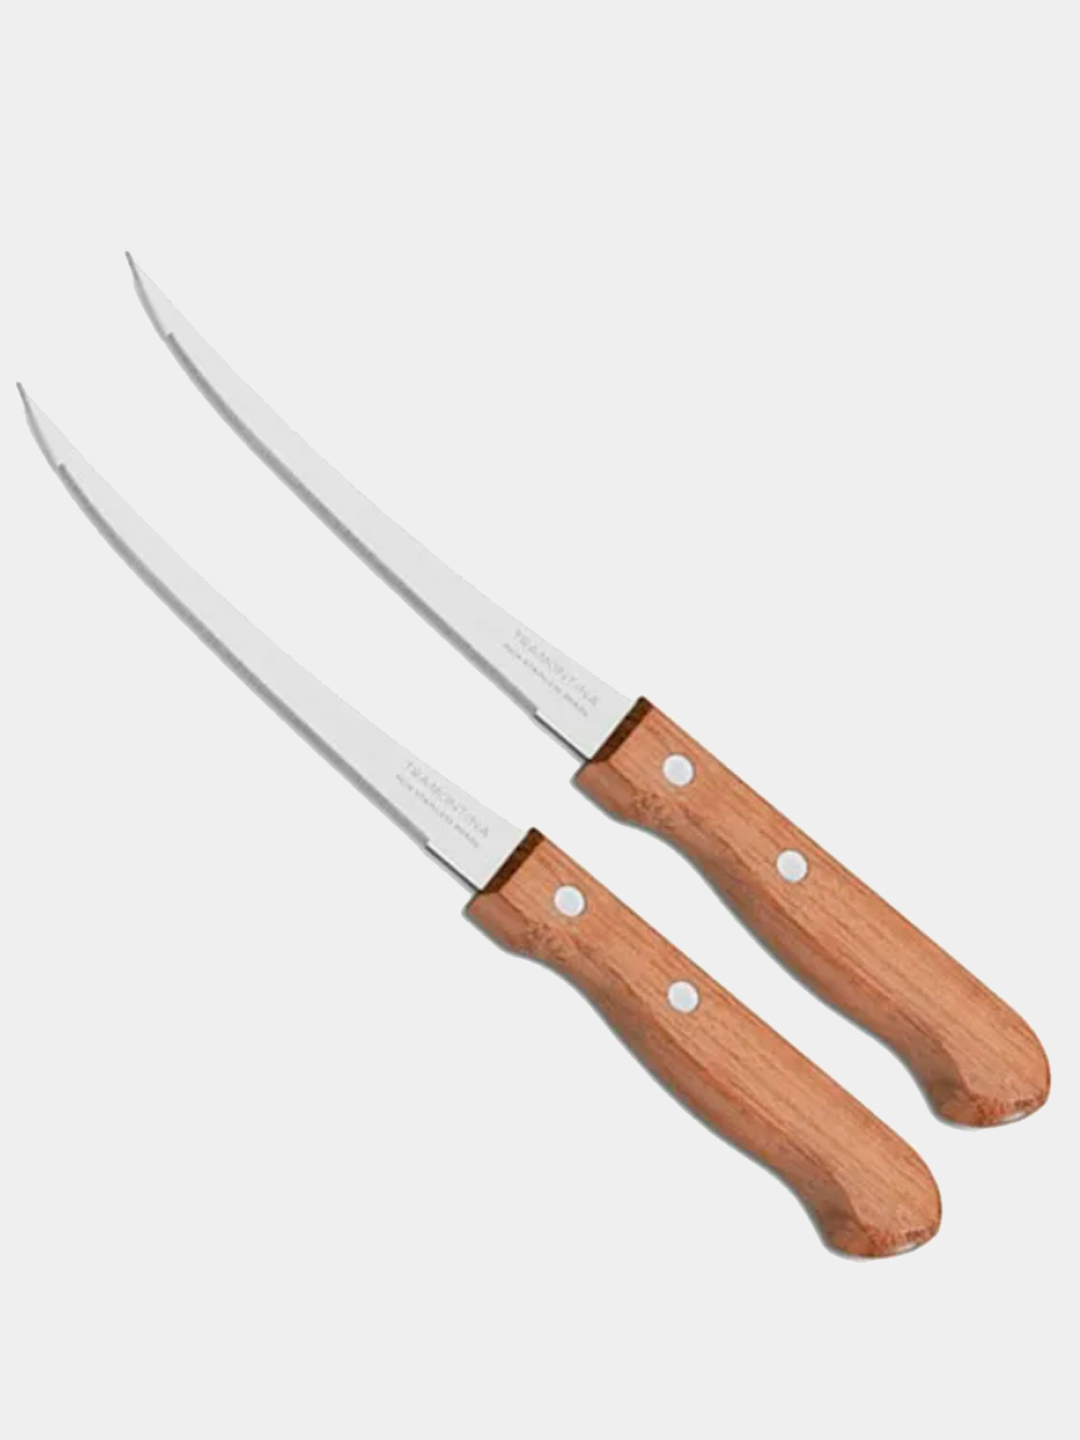 Нож для томатов. Tramontina Dynamic нож для томатов 12.7см 22327/005 871-542. Tramontina нож 12,7 см. Нож для томатов Трамонтина 12.5см м1194. Трамонтина ножи 12шт с деревянной ручкой.